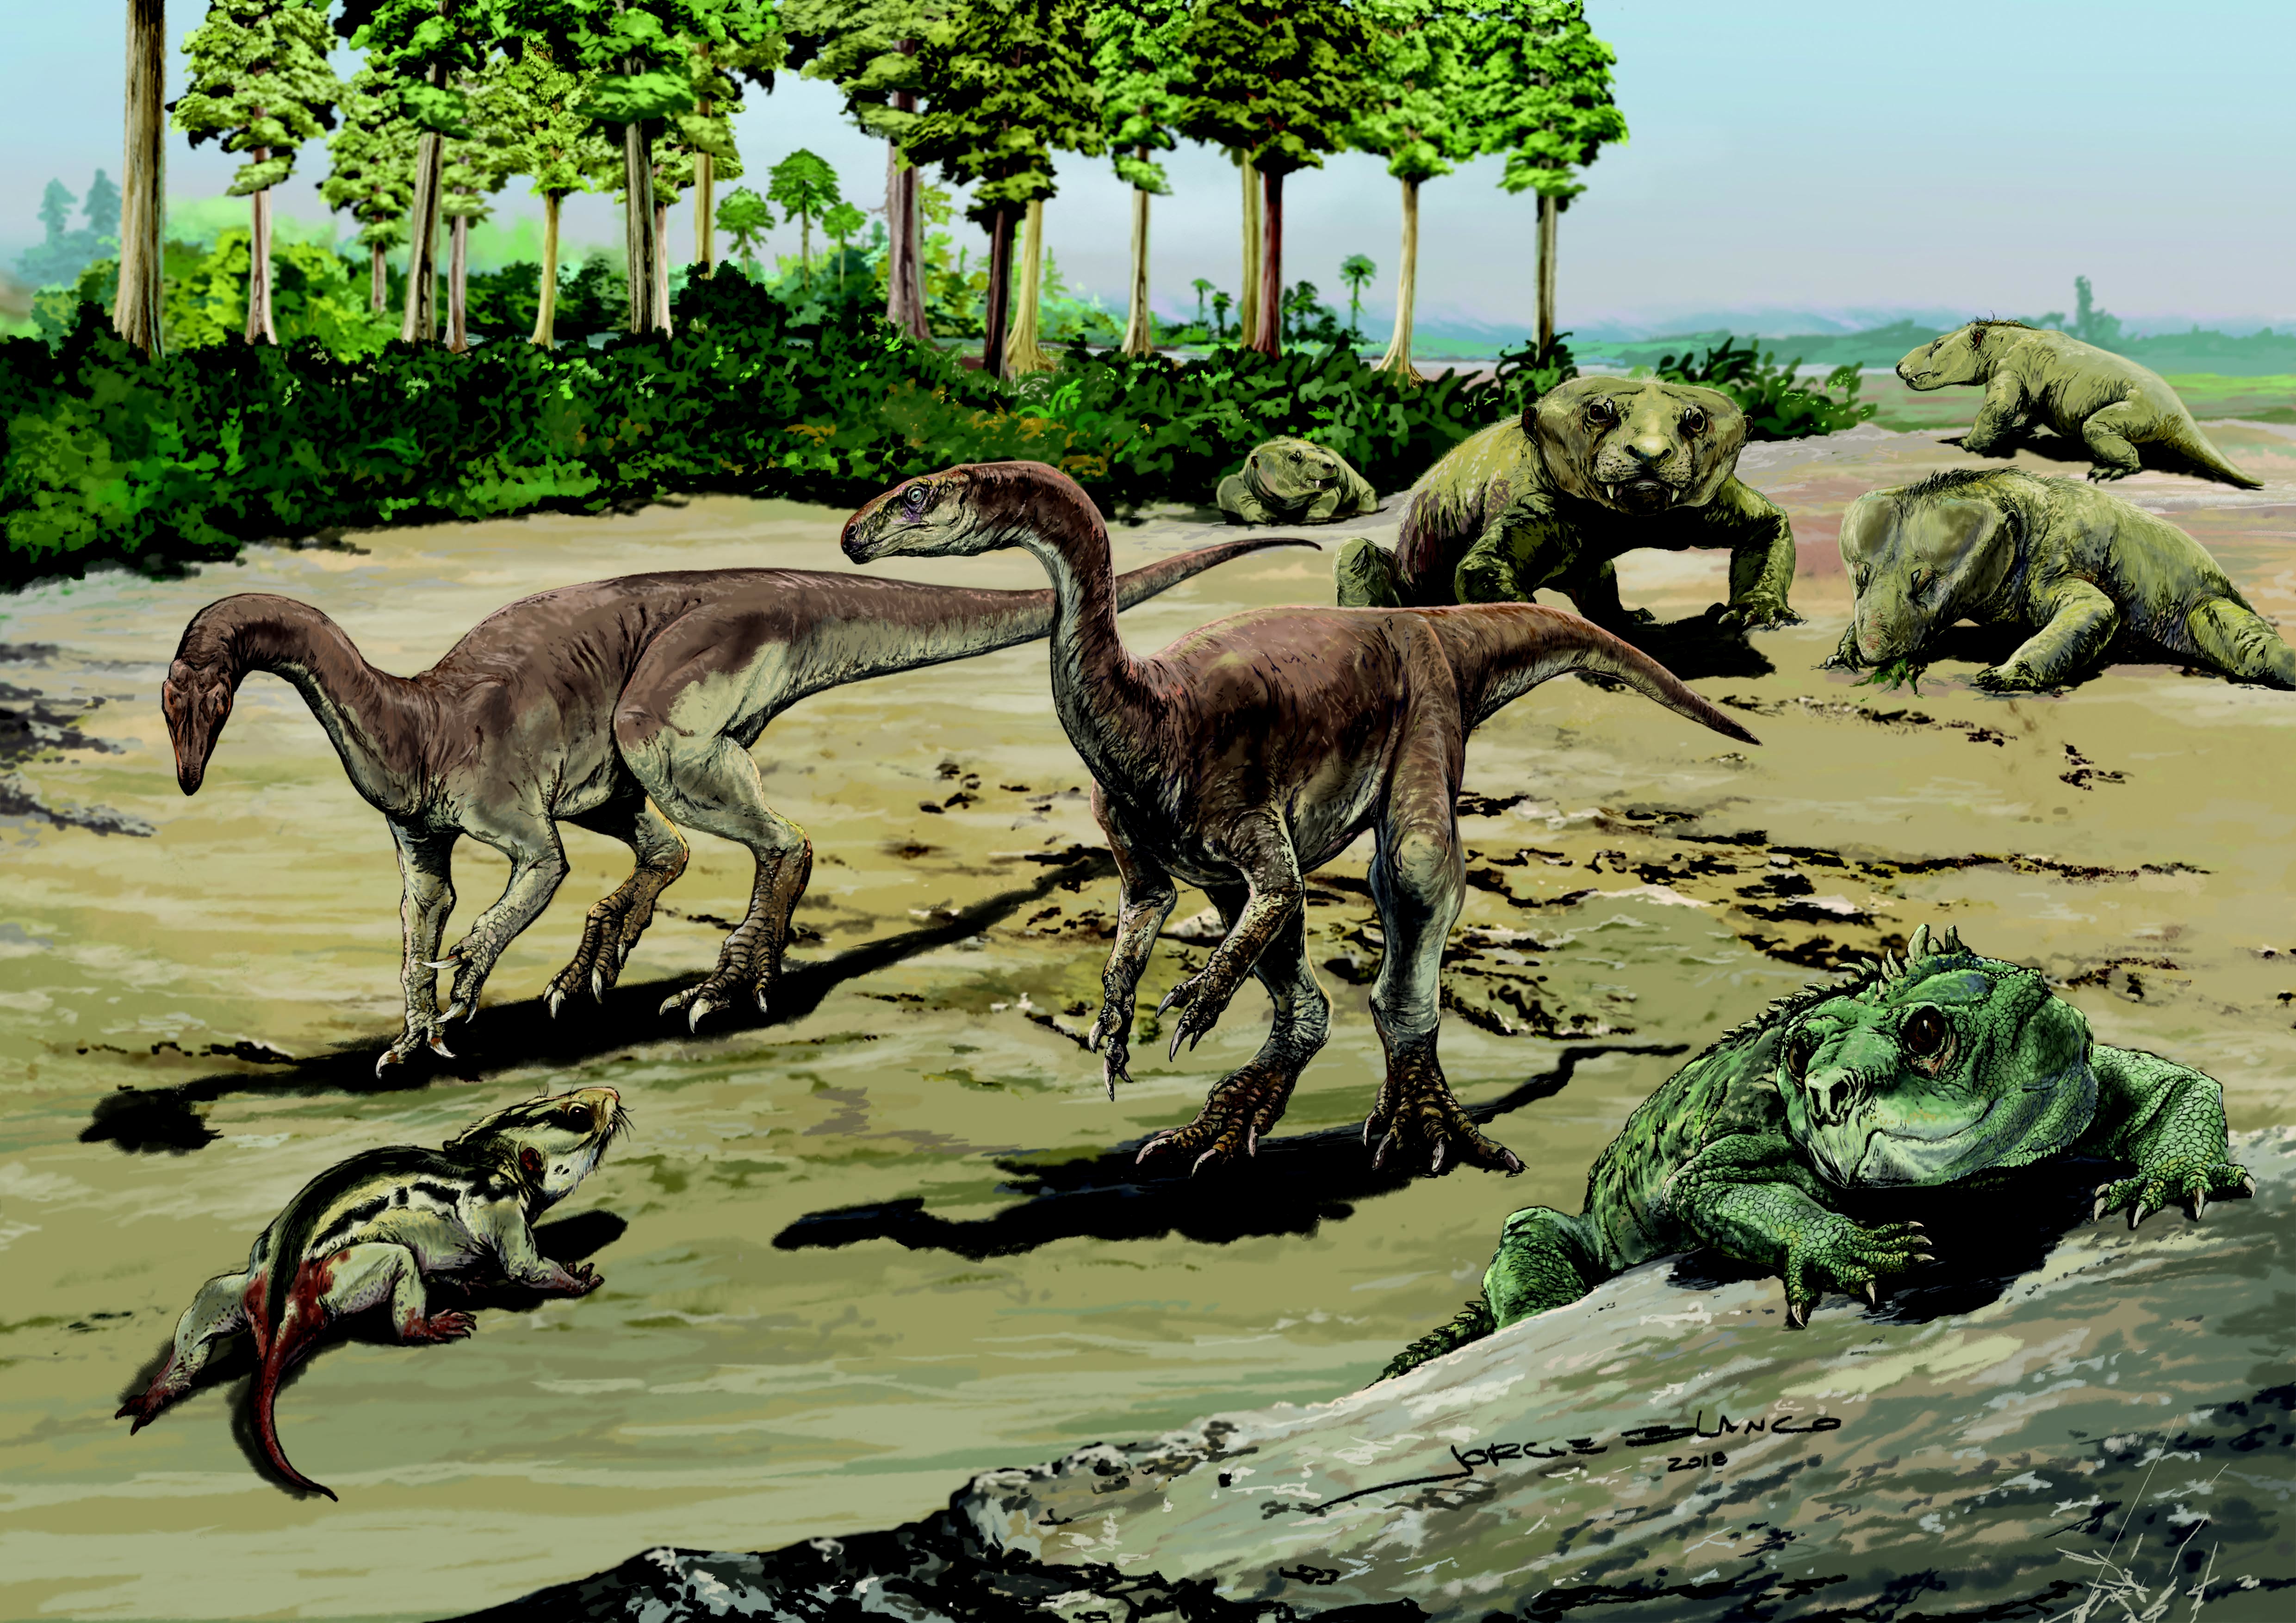 Representação artística da paisagem na região de Agudo (sul do Brasil), há cerca de 230 milhões de anos (período Triássico). No centro da imagem, uma dupla de Bagualosaurus agudoensis confronta o cinodonte Trucidocynodon riograndensis (canto inferior esquerdo). No canto inferior direito, um Hyperodapedon, réptil herbívoro do grupo dos rincossauros. Ao fundo, um grupo de cinodontes, Exaeretodon riograndensis, observa a cena. (Foto: Arte de Jorge Blanco.)